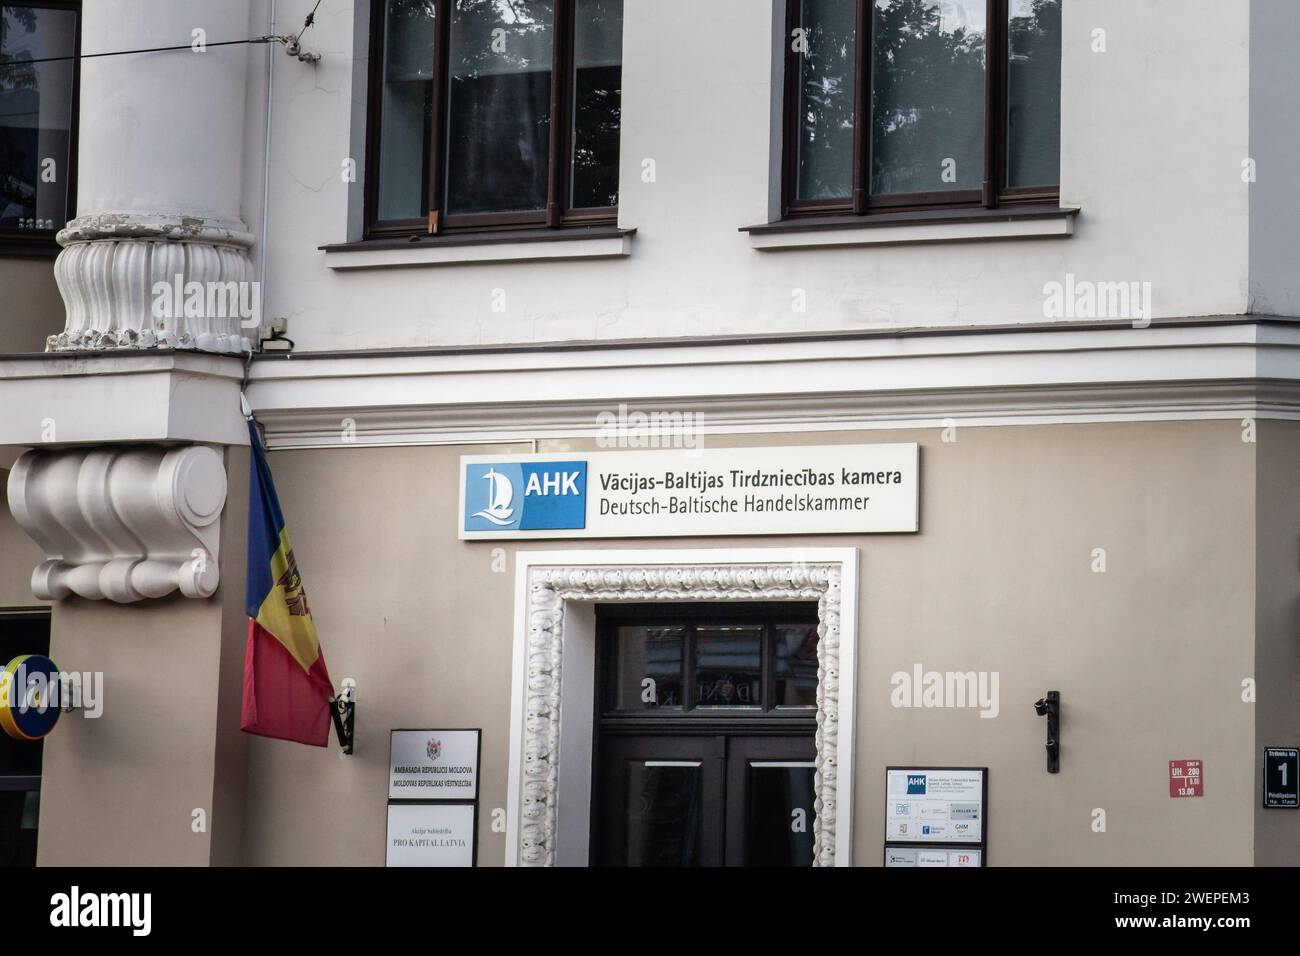 Immagine di un cartello con la deutsche baltische handelskammer nel loro ufficio per riga, lettonia. e' la camera di commercio tedesca negli stati baltici Foto Stock